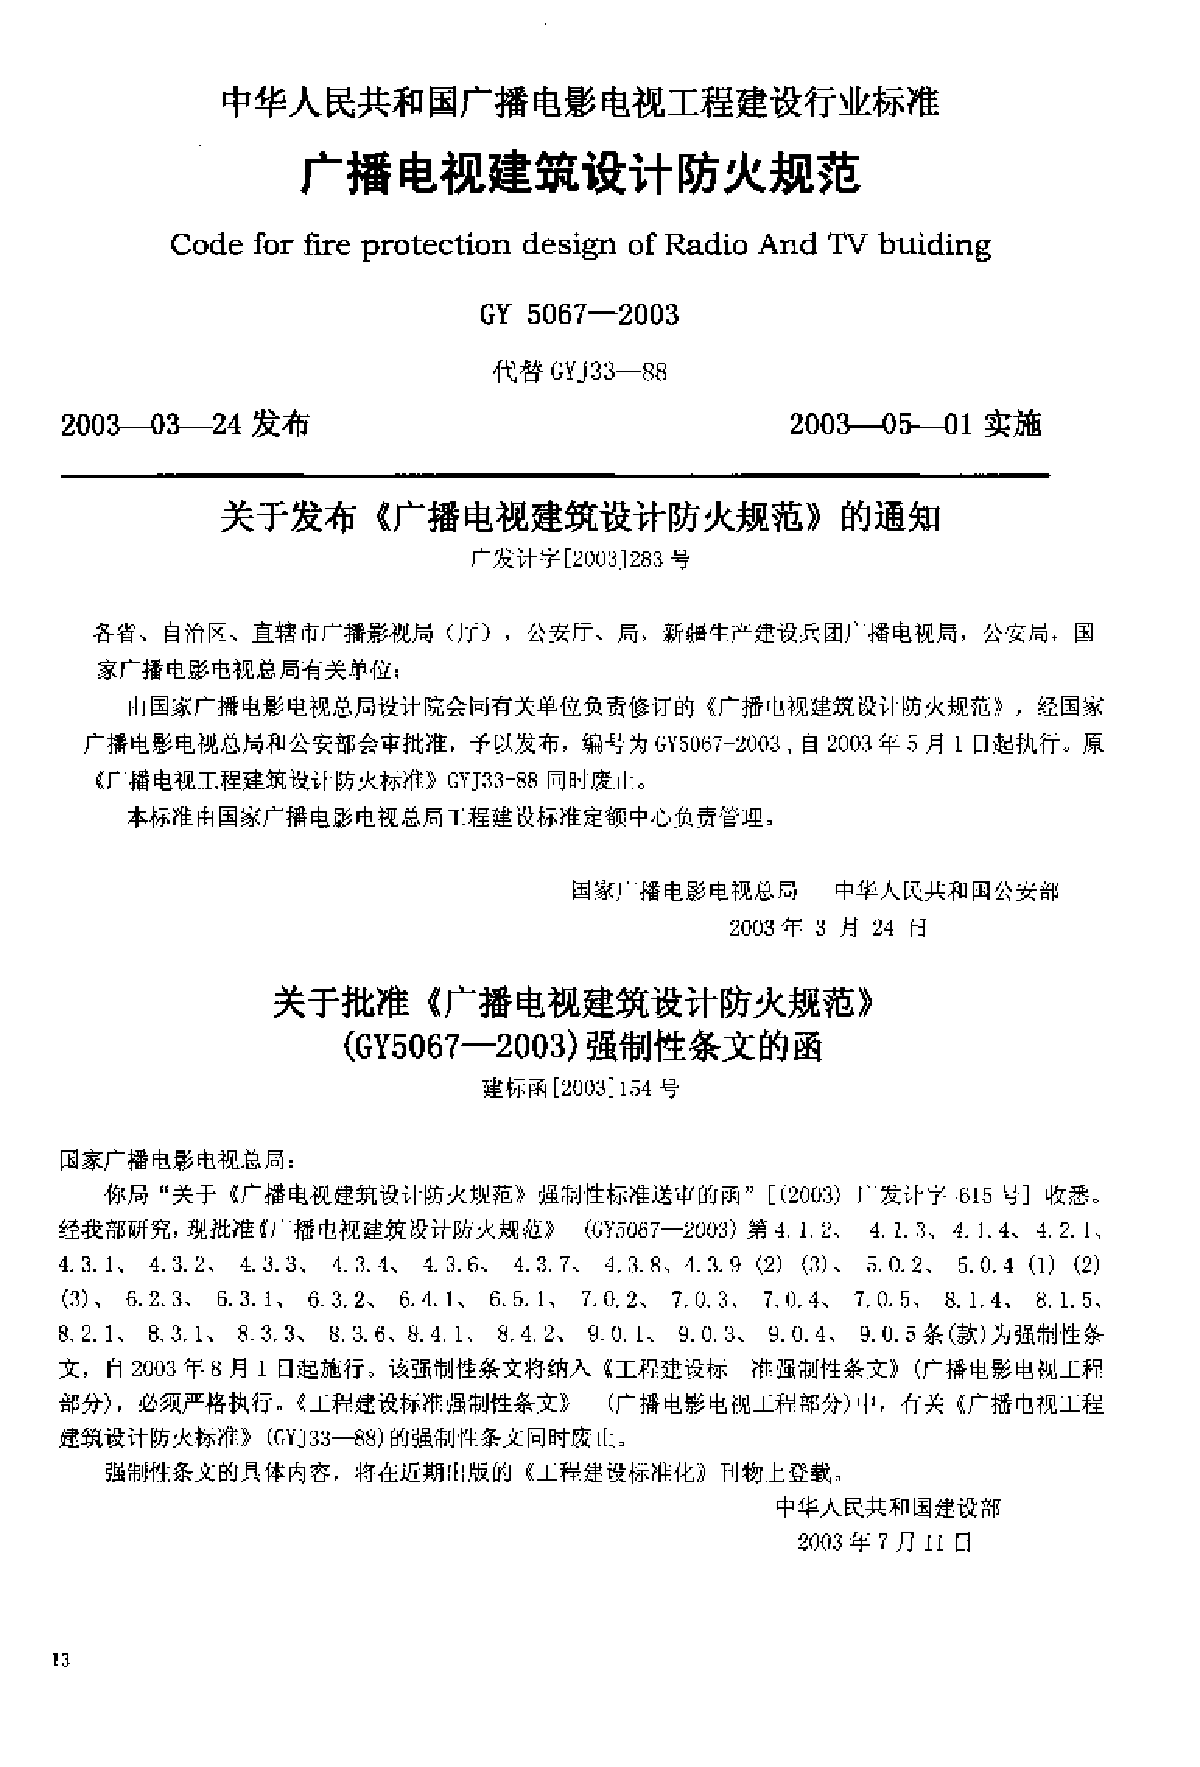 广播电视建筑设计防火规范(GY 5067-2003 ).pdf